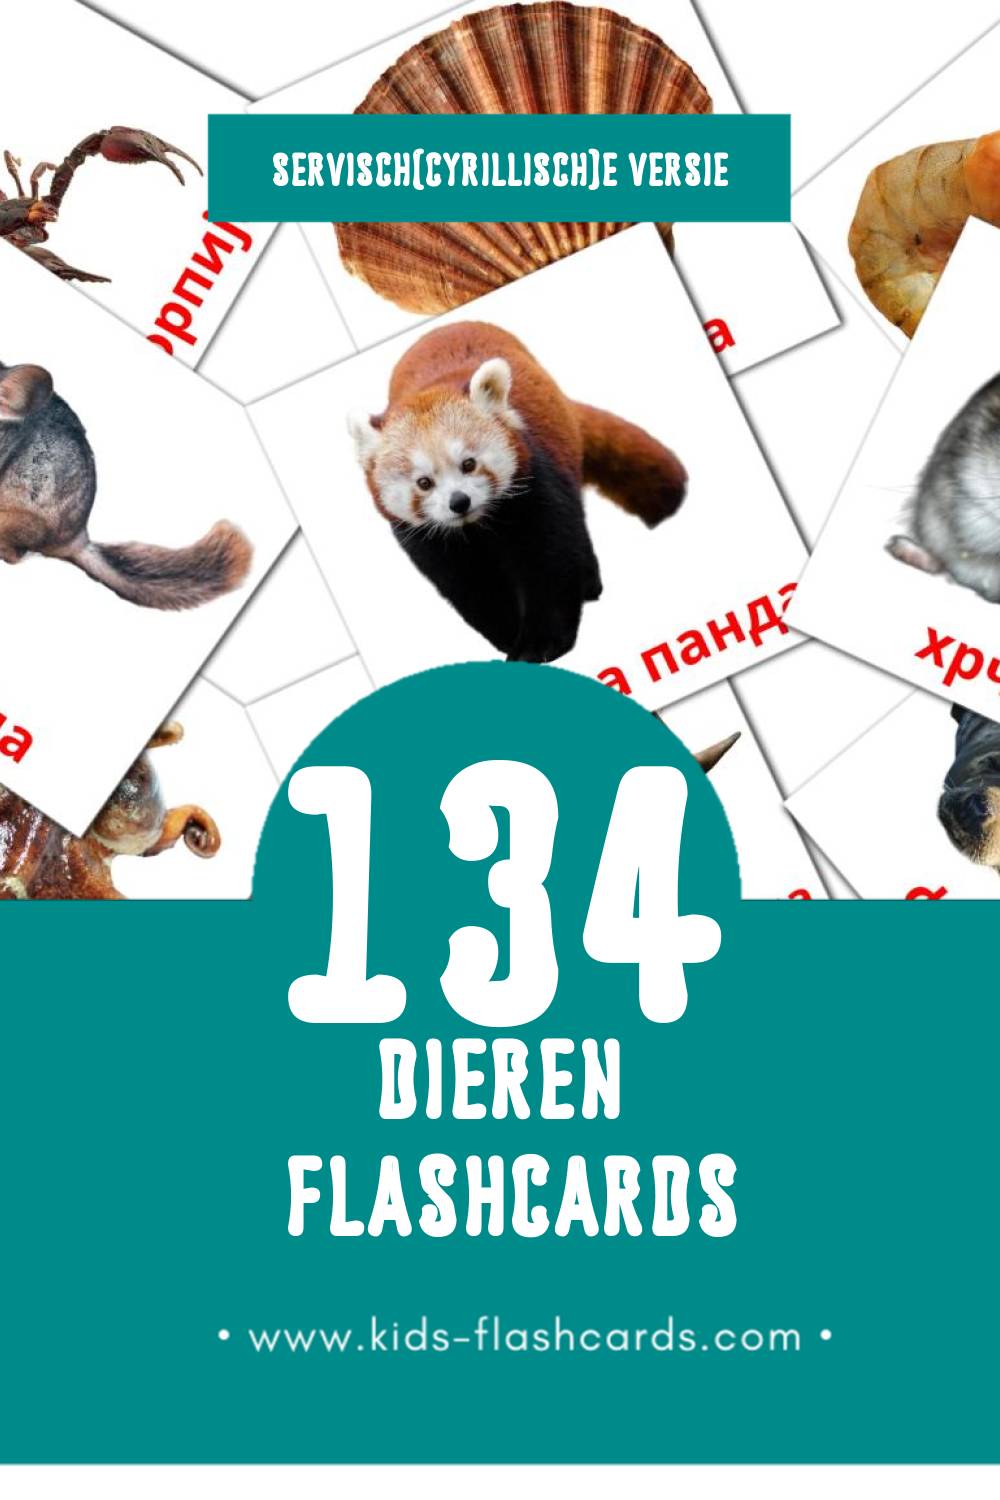 Visuele Животиње Flashcards voor Kleuters (134 kaarten in het Servisch(cyrillisch))